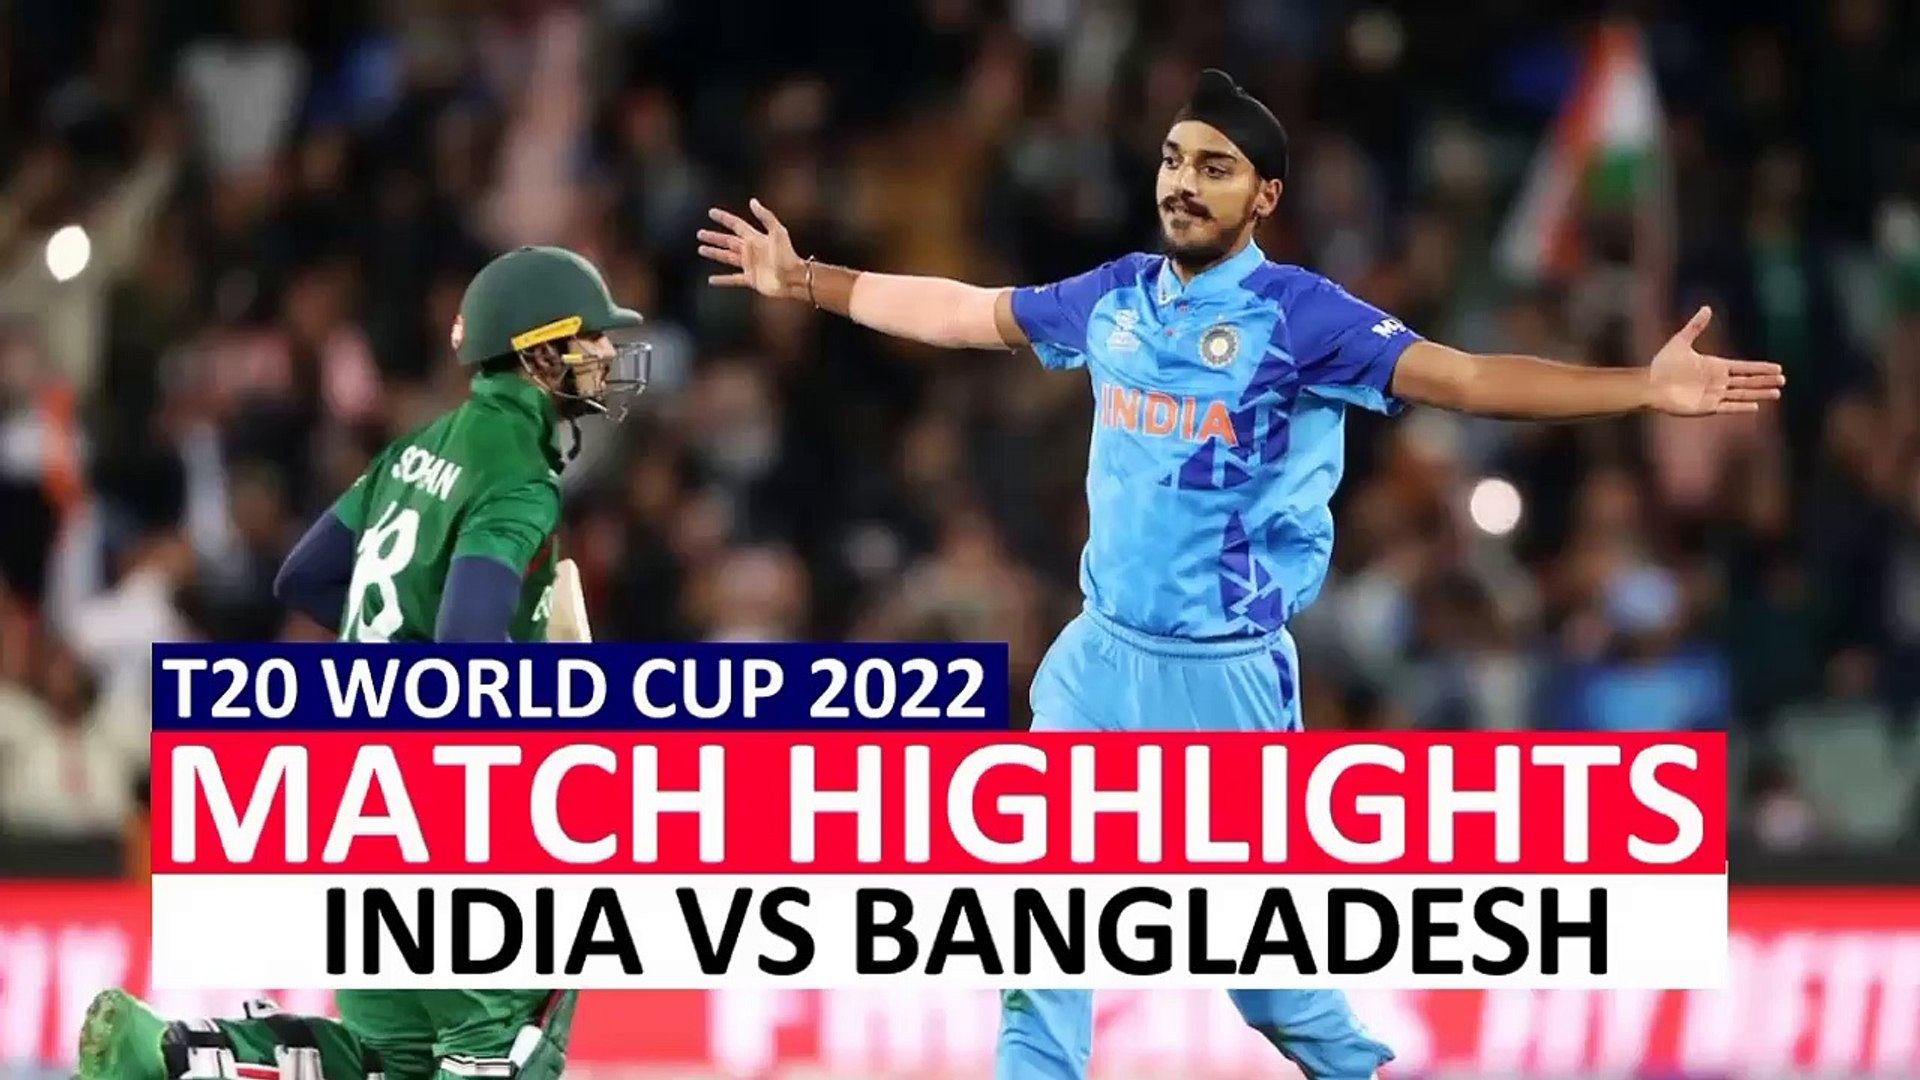 India vs Bangladesh T20 World Cup 2022 Highlights